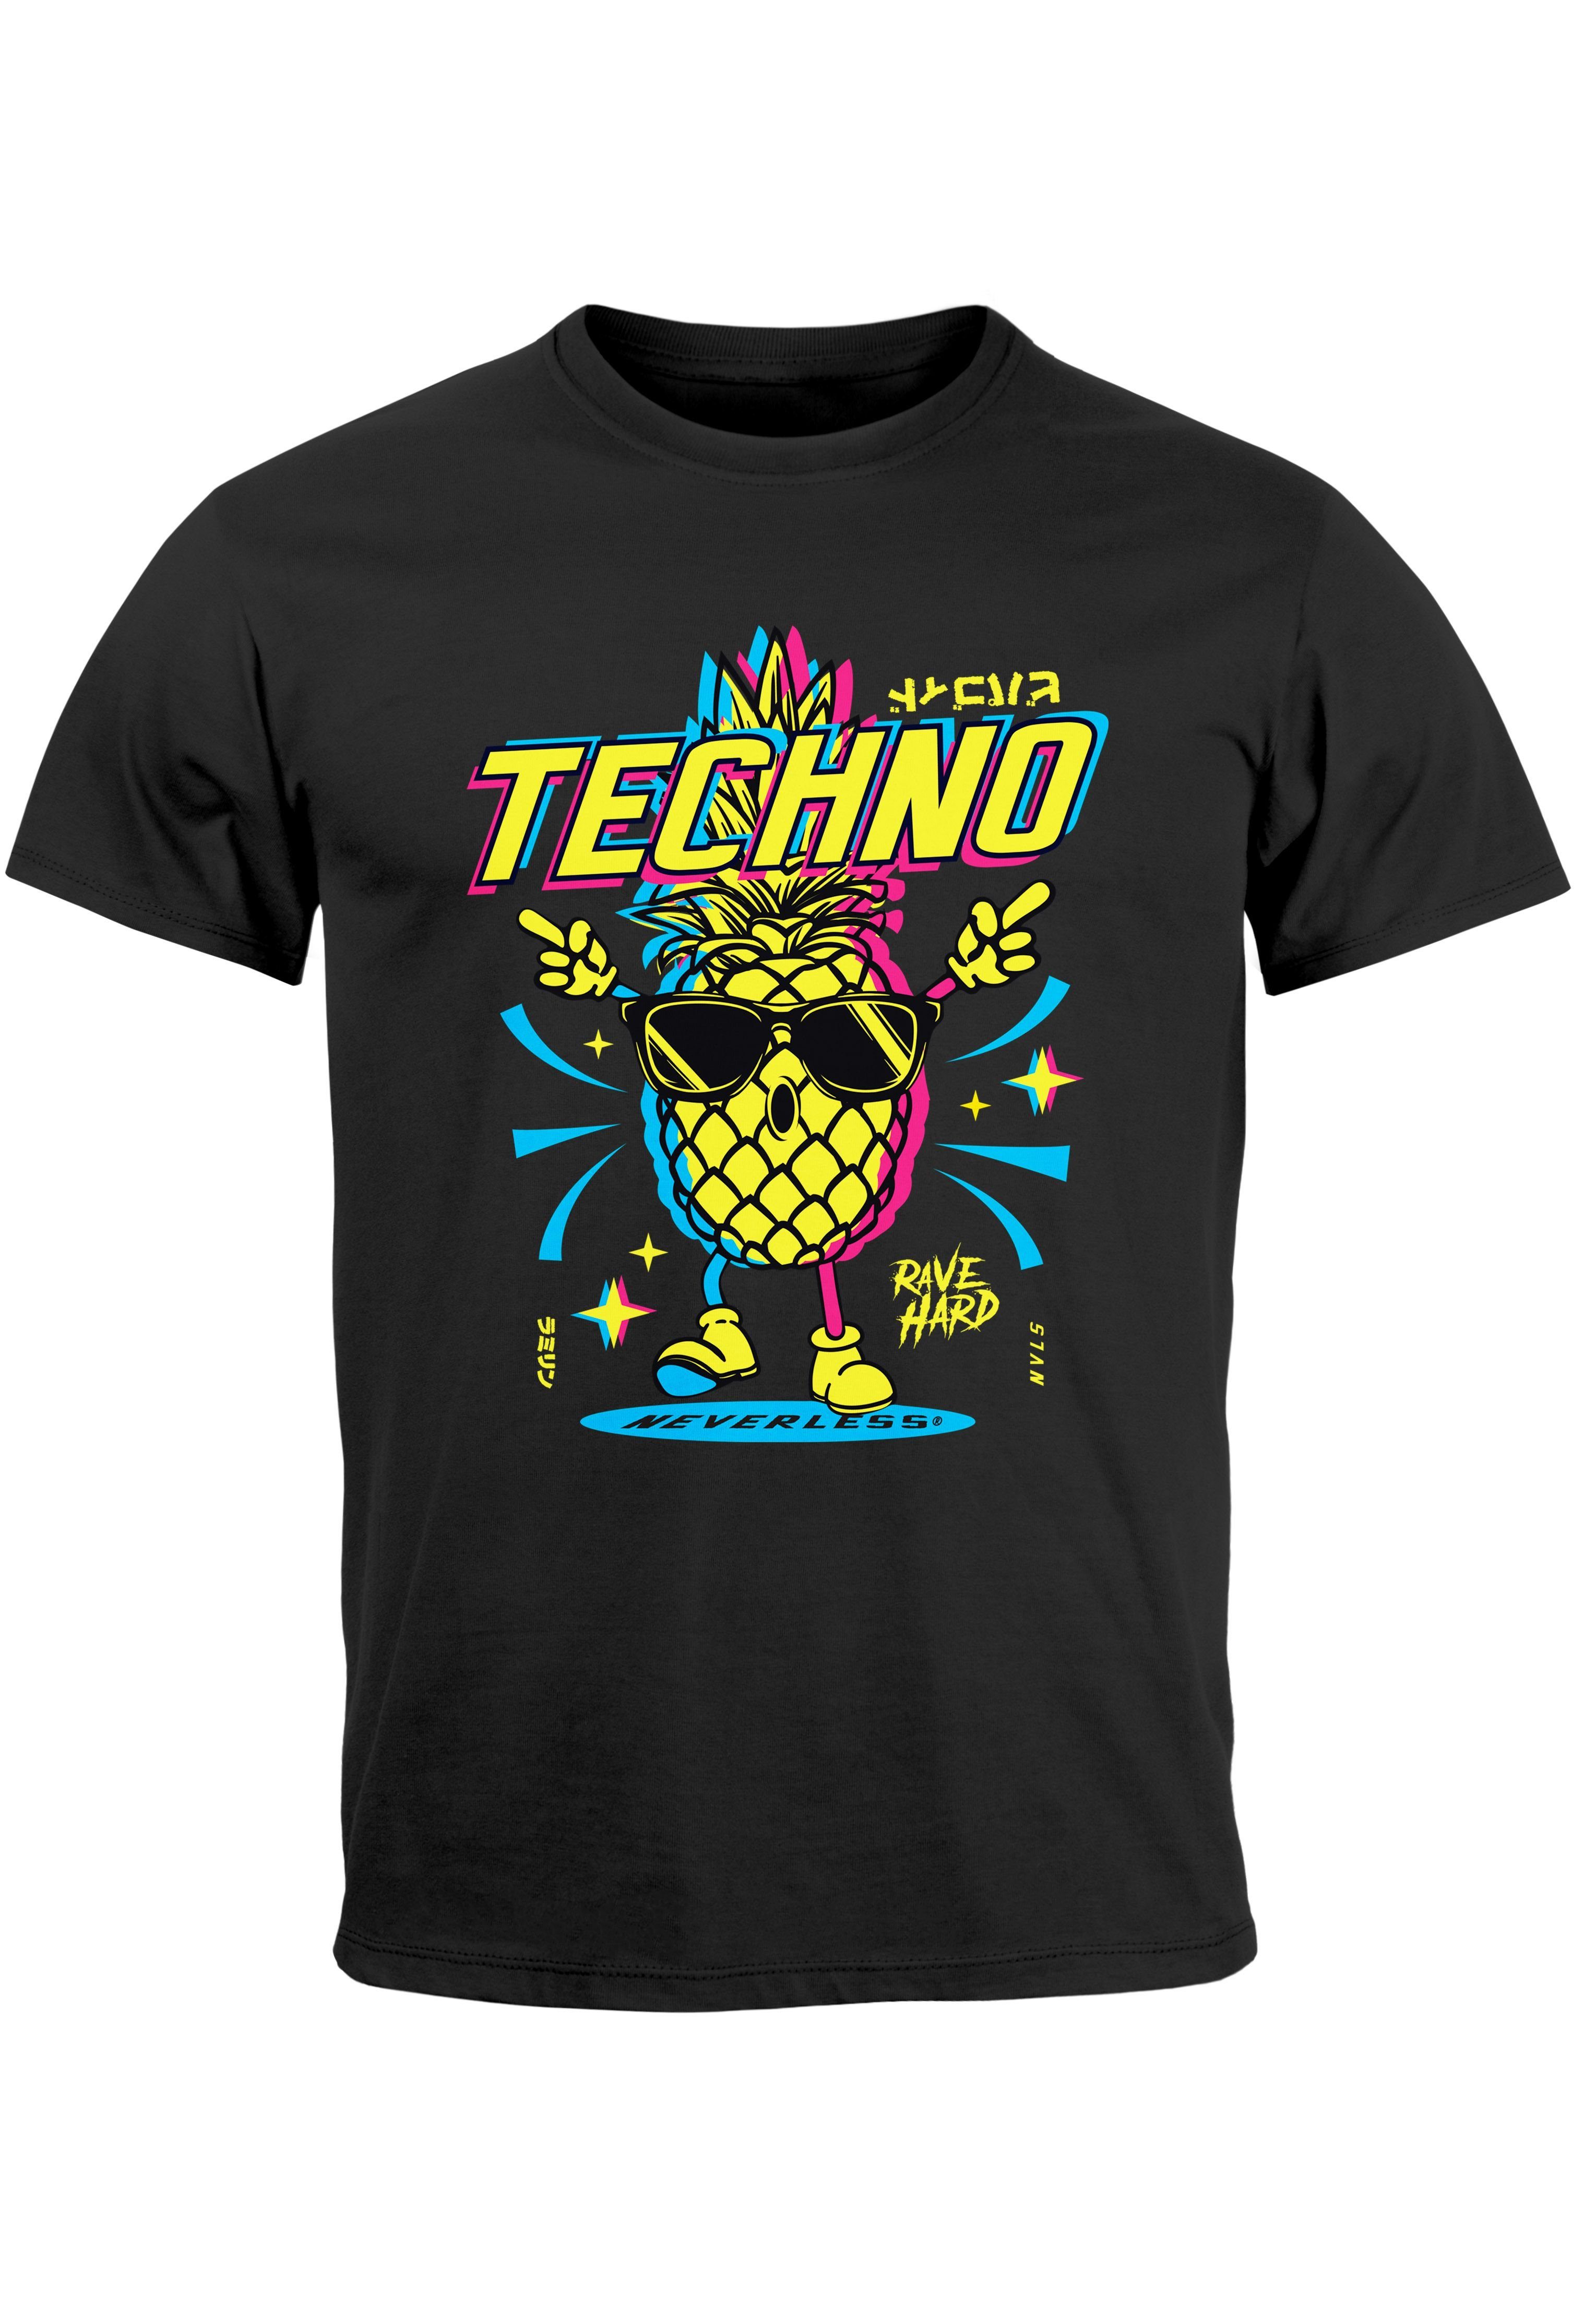 Neverless Print-Shirt Herren T-Shirt Shirt Techno Tanzen Lustig Ananas Rave Party Printshirt mit Print schwarz